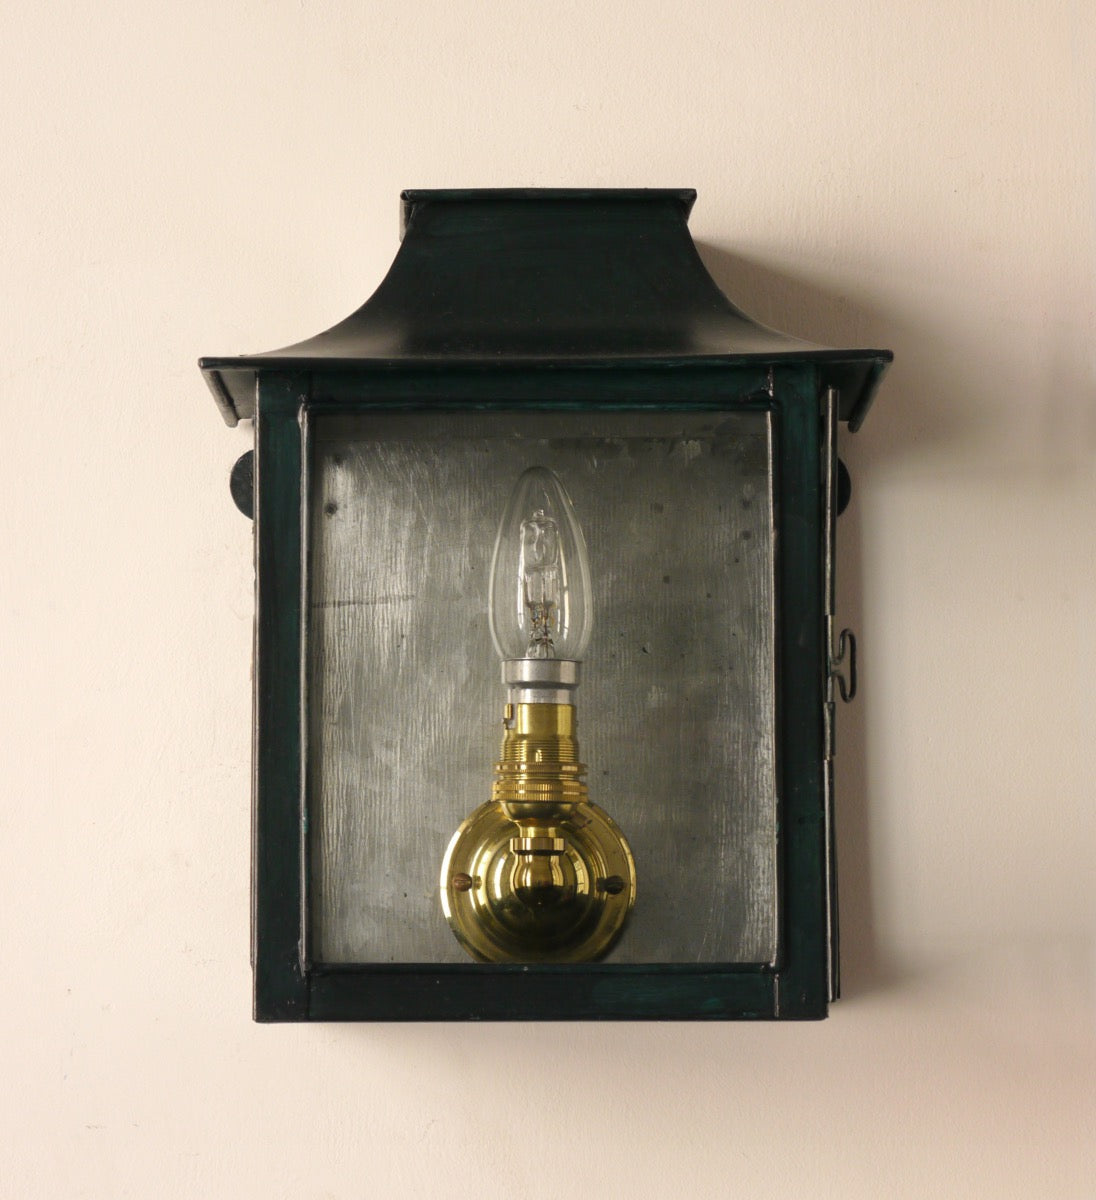 Painted Tin Lantern